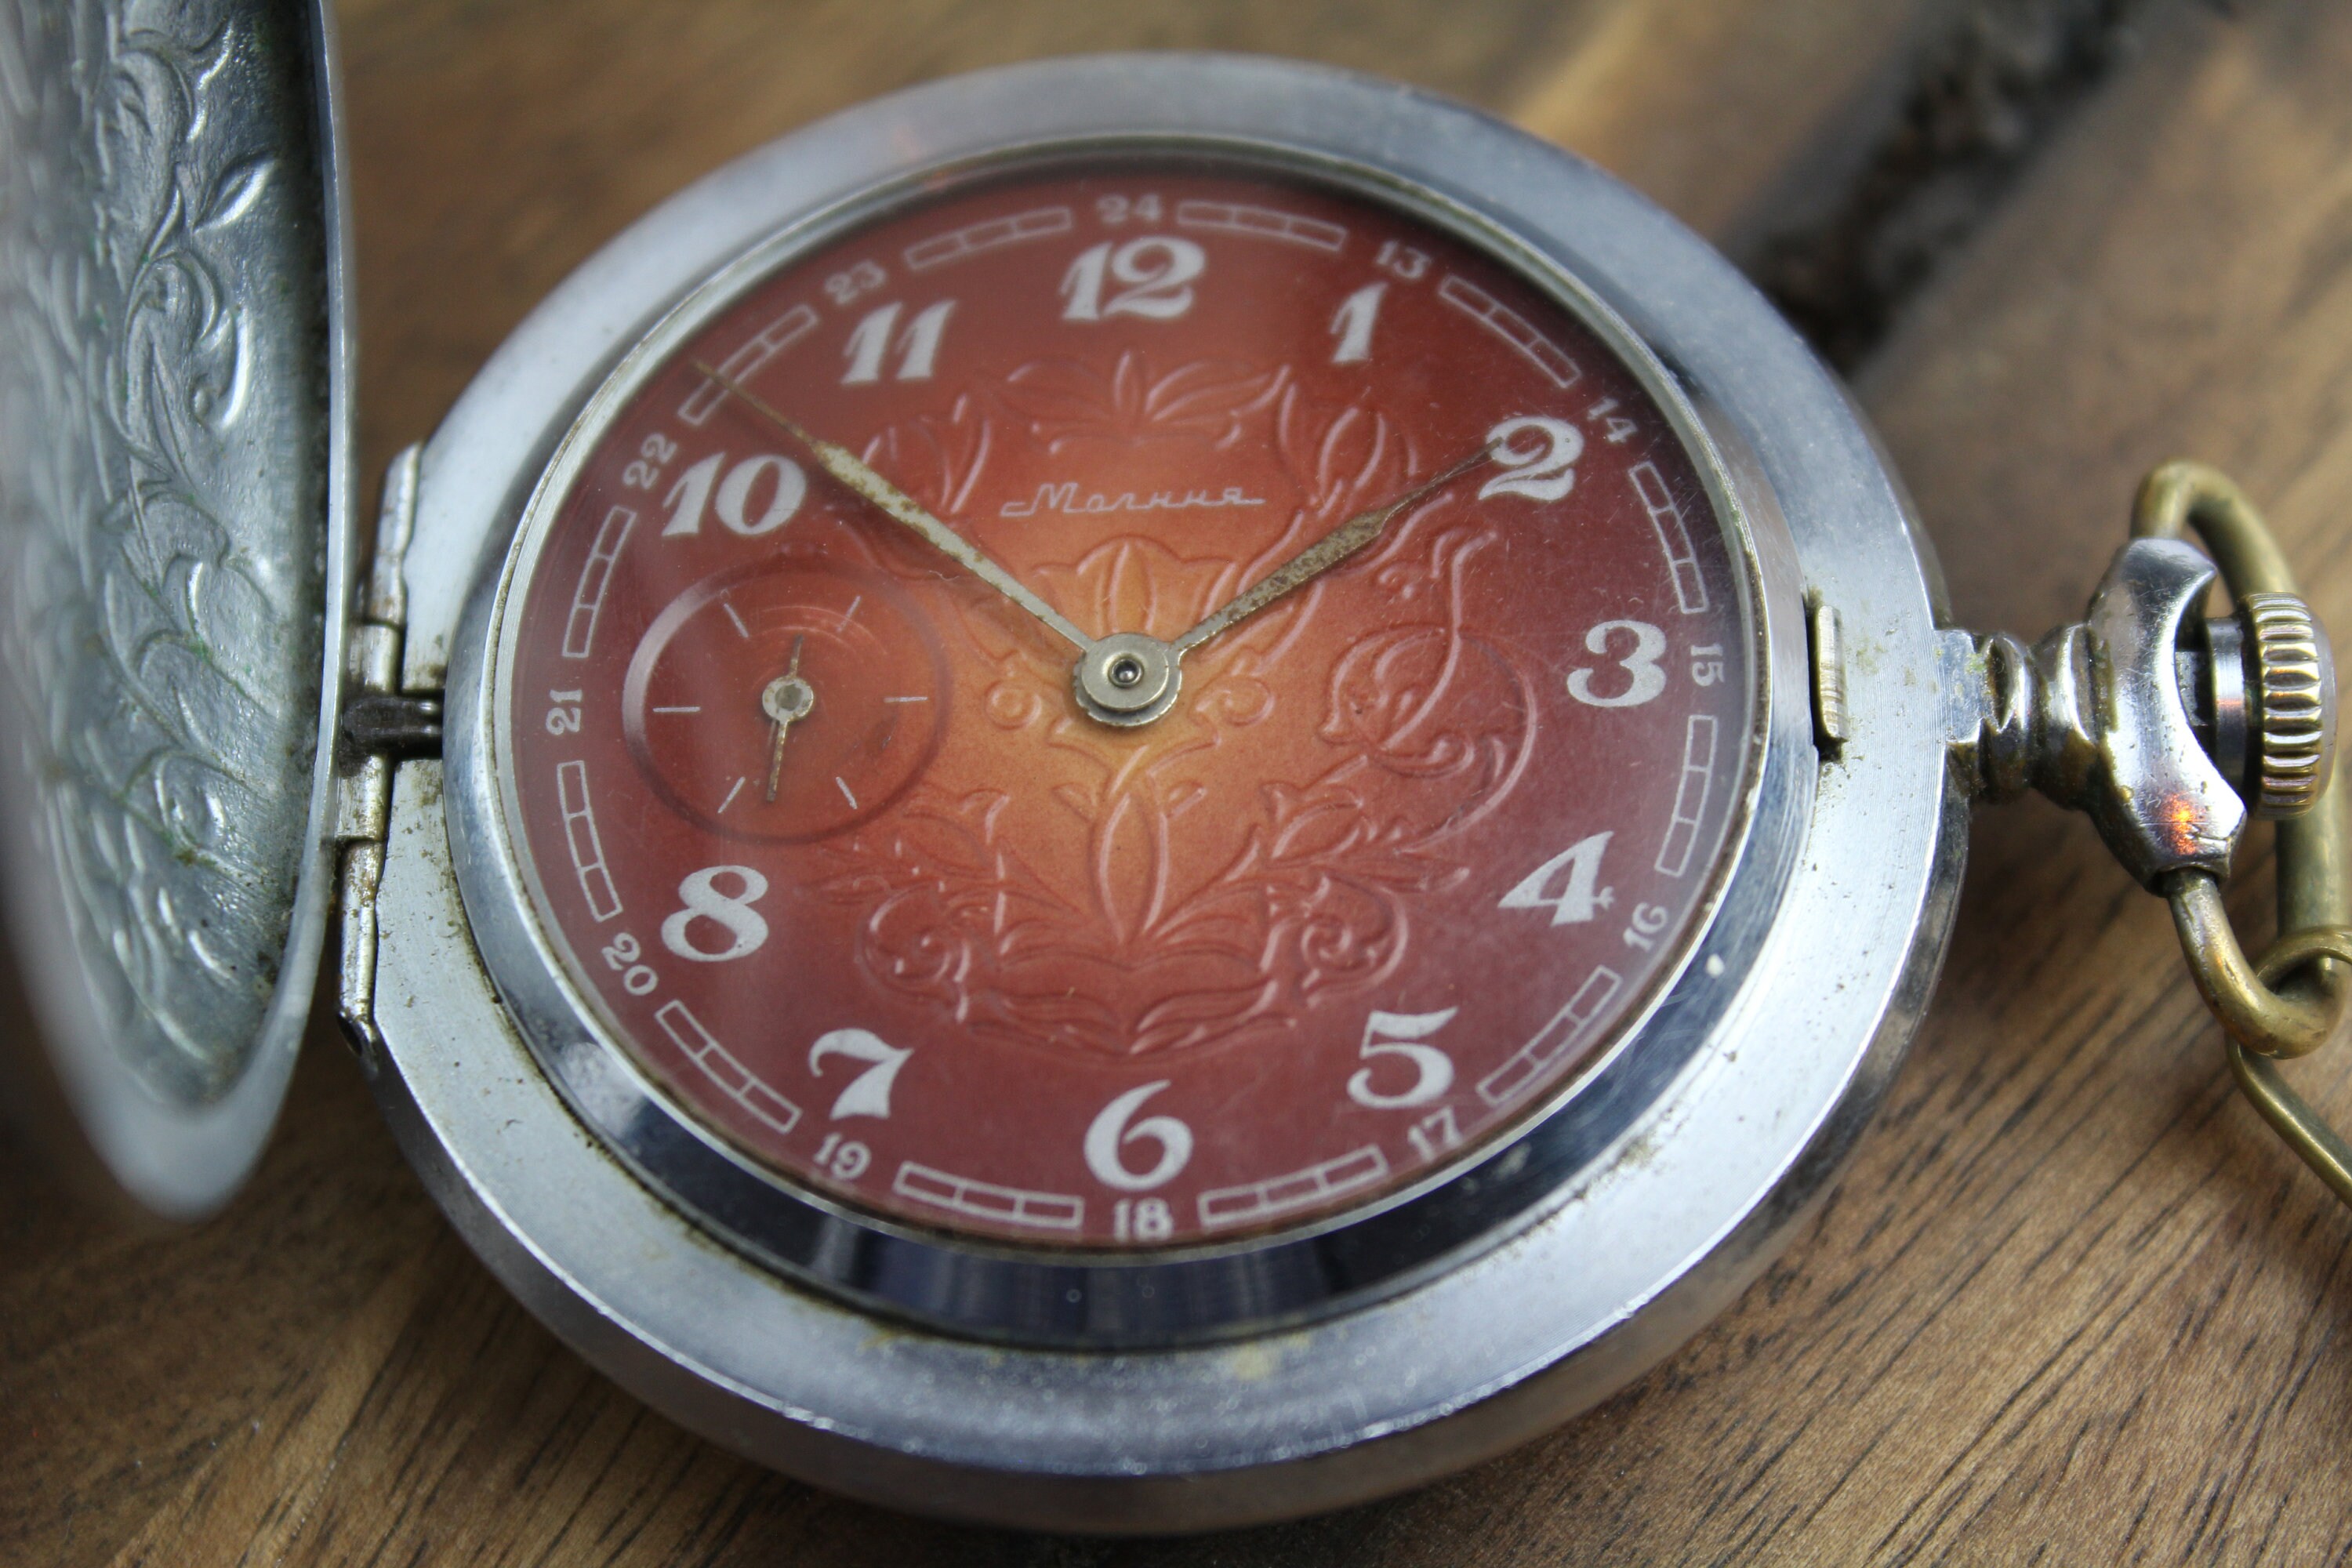 Milanuncios - Maquinaria reloj bolsillo con esfera 45M